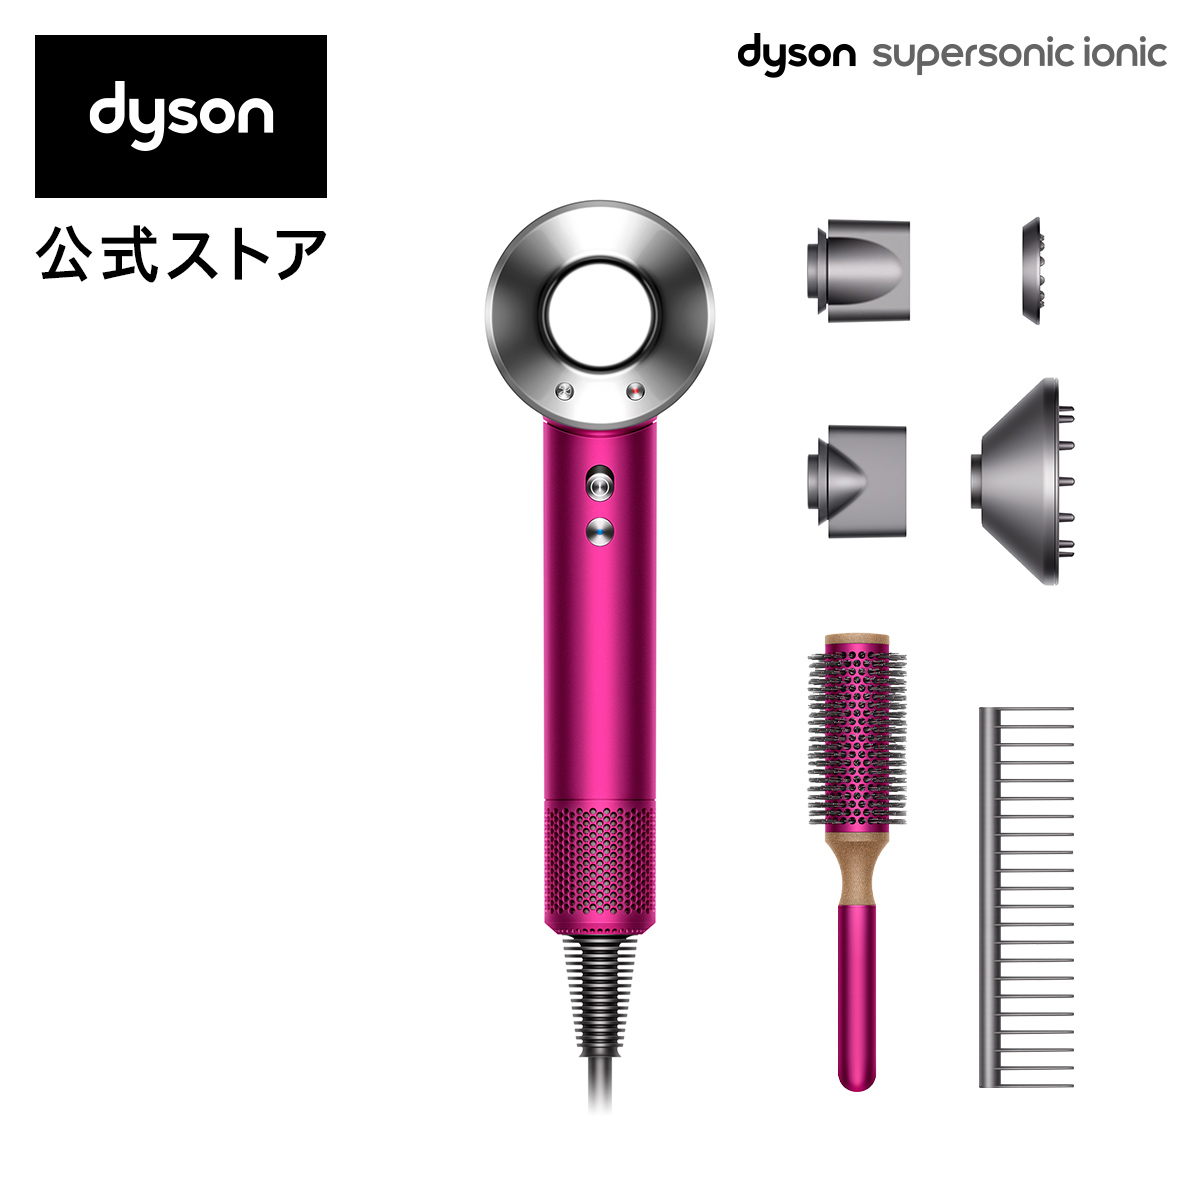 ダイソン ヘアドライヤー HD03 dyson supersonic - ヘアドライヤー